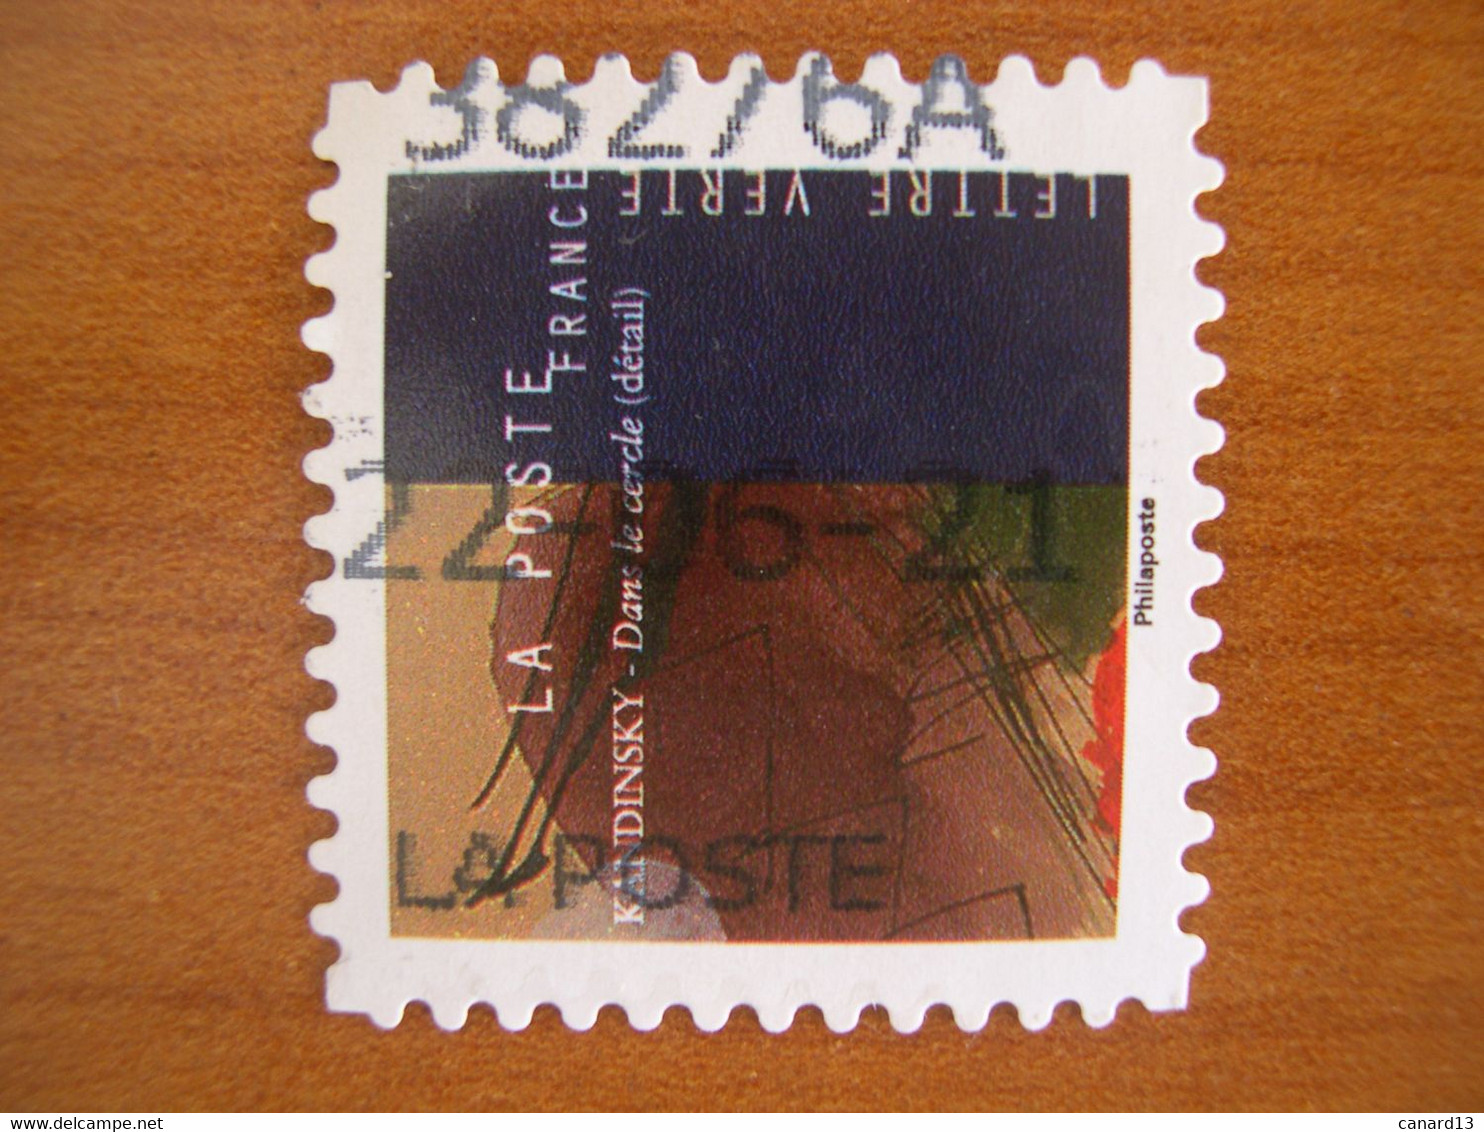 France  Obl   N° 1972 Oblitération Date - Used Stamps